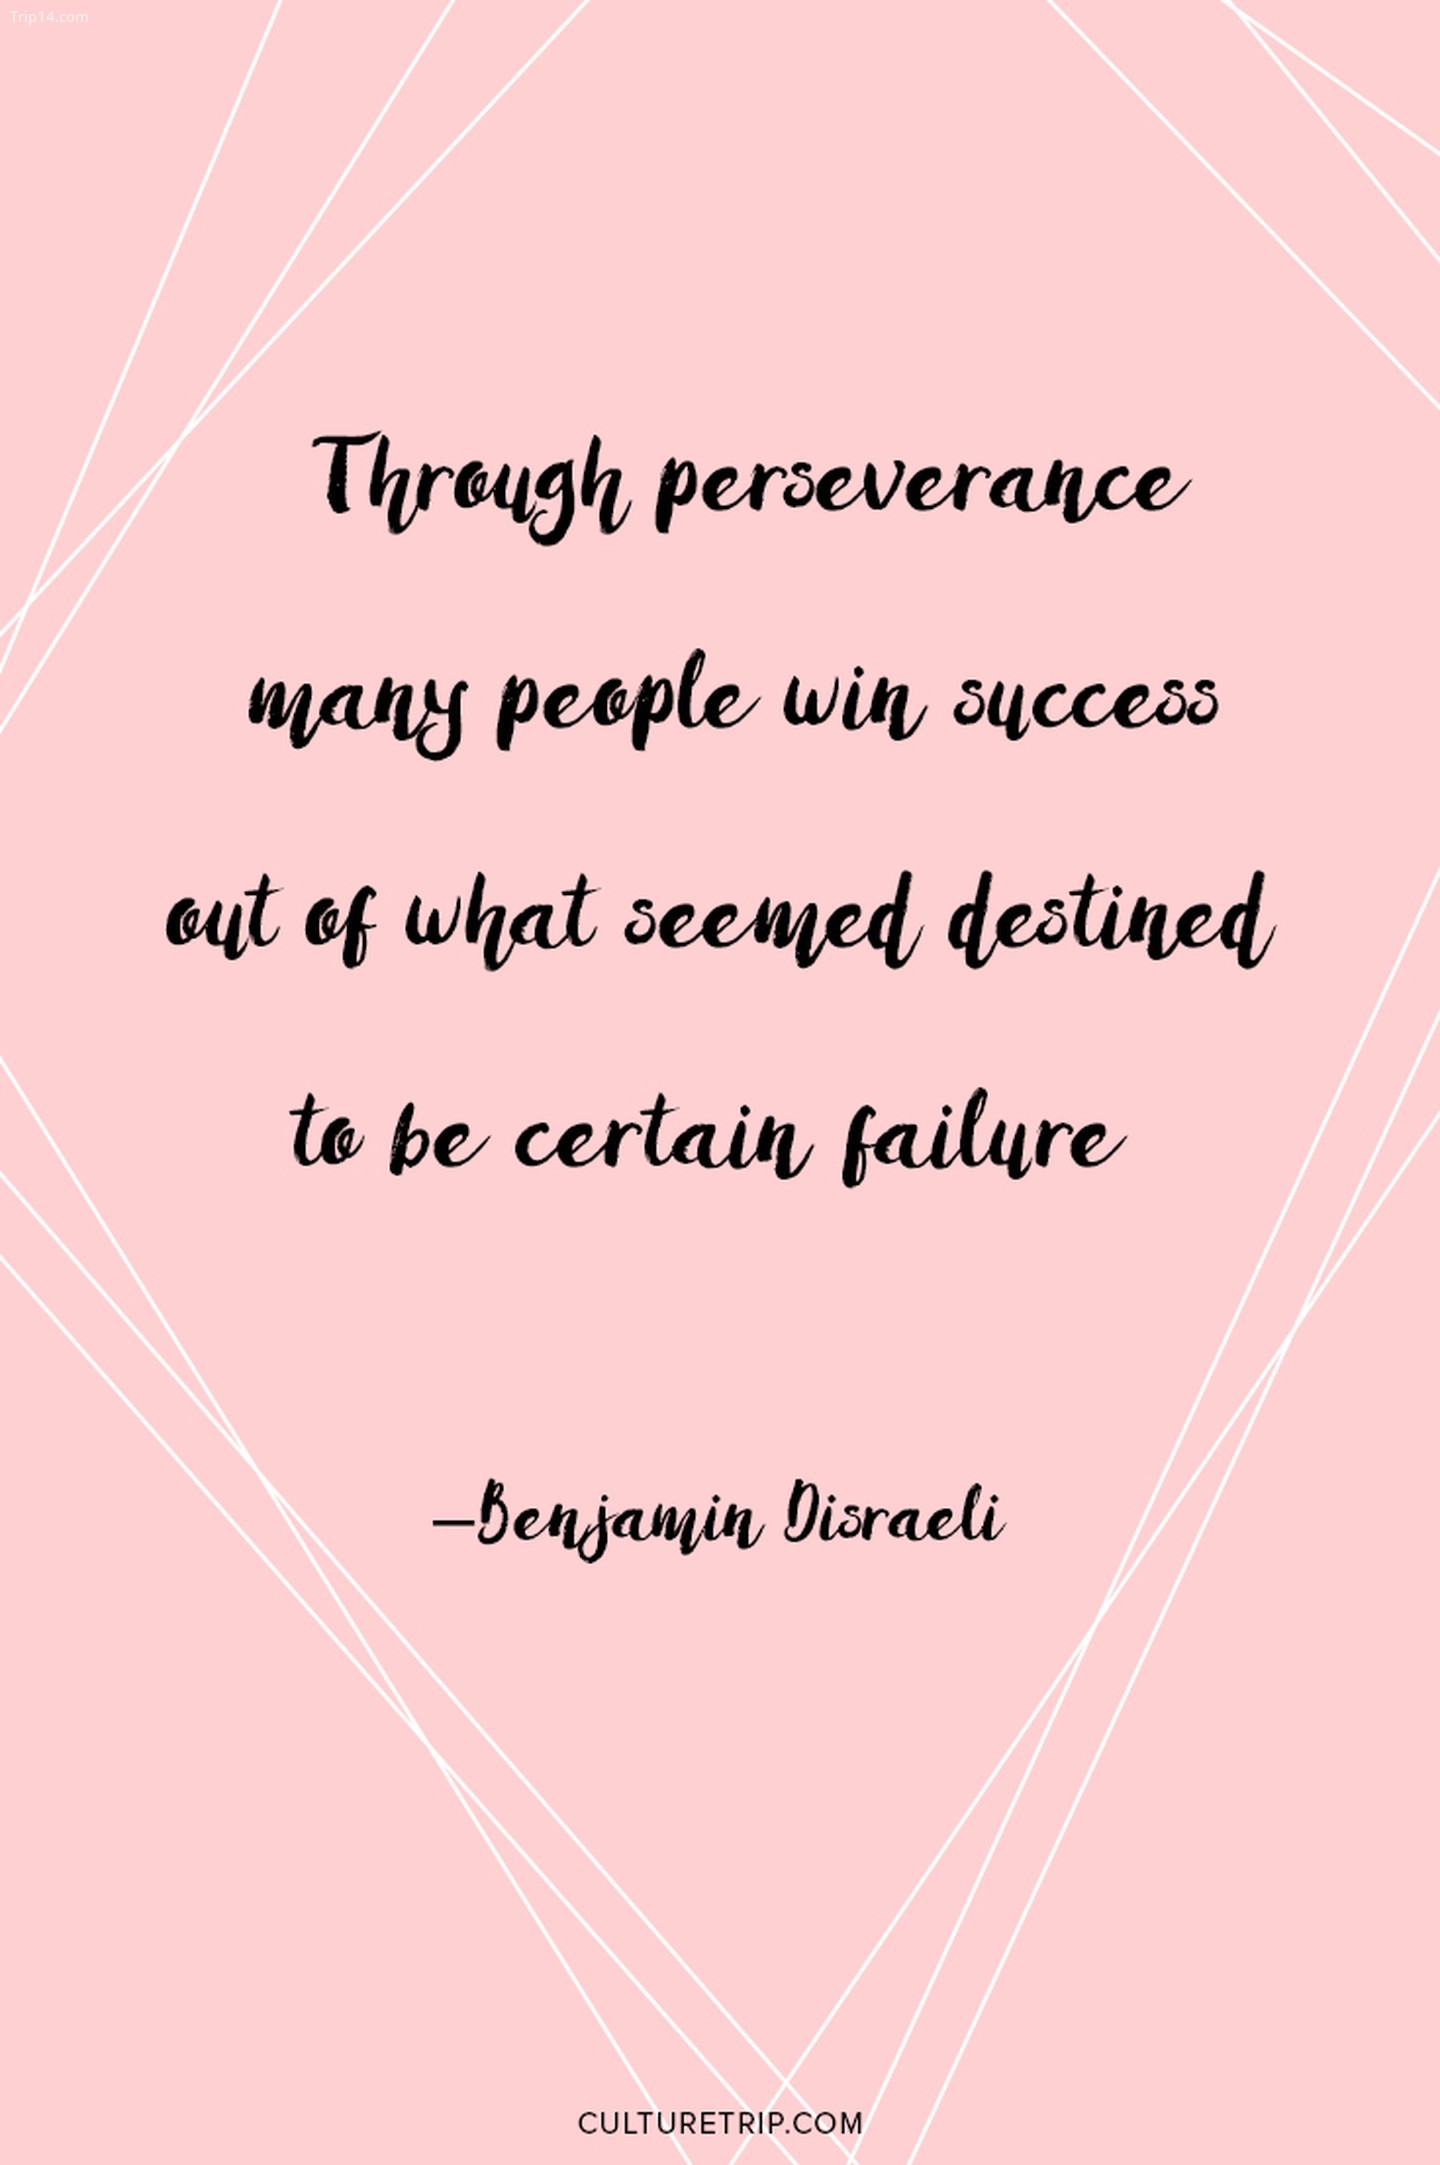 Nhờ sự kiên trì, nhiều người giành được thành công từ những gì tưởng chừng như đã được định sẵn là thất bại nhất định.